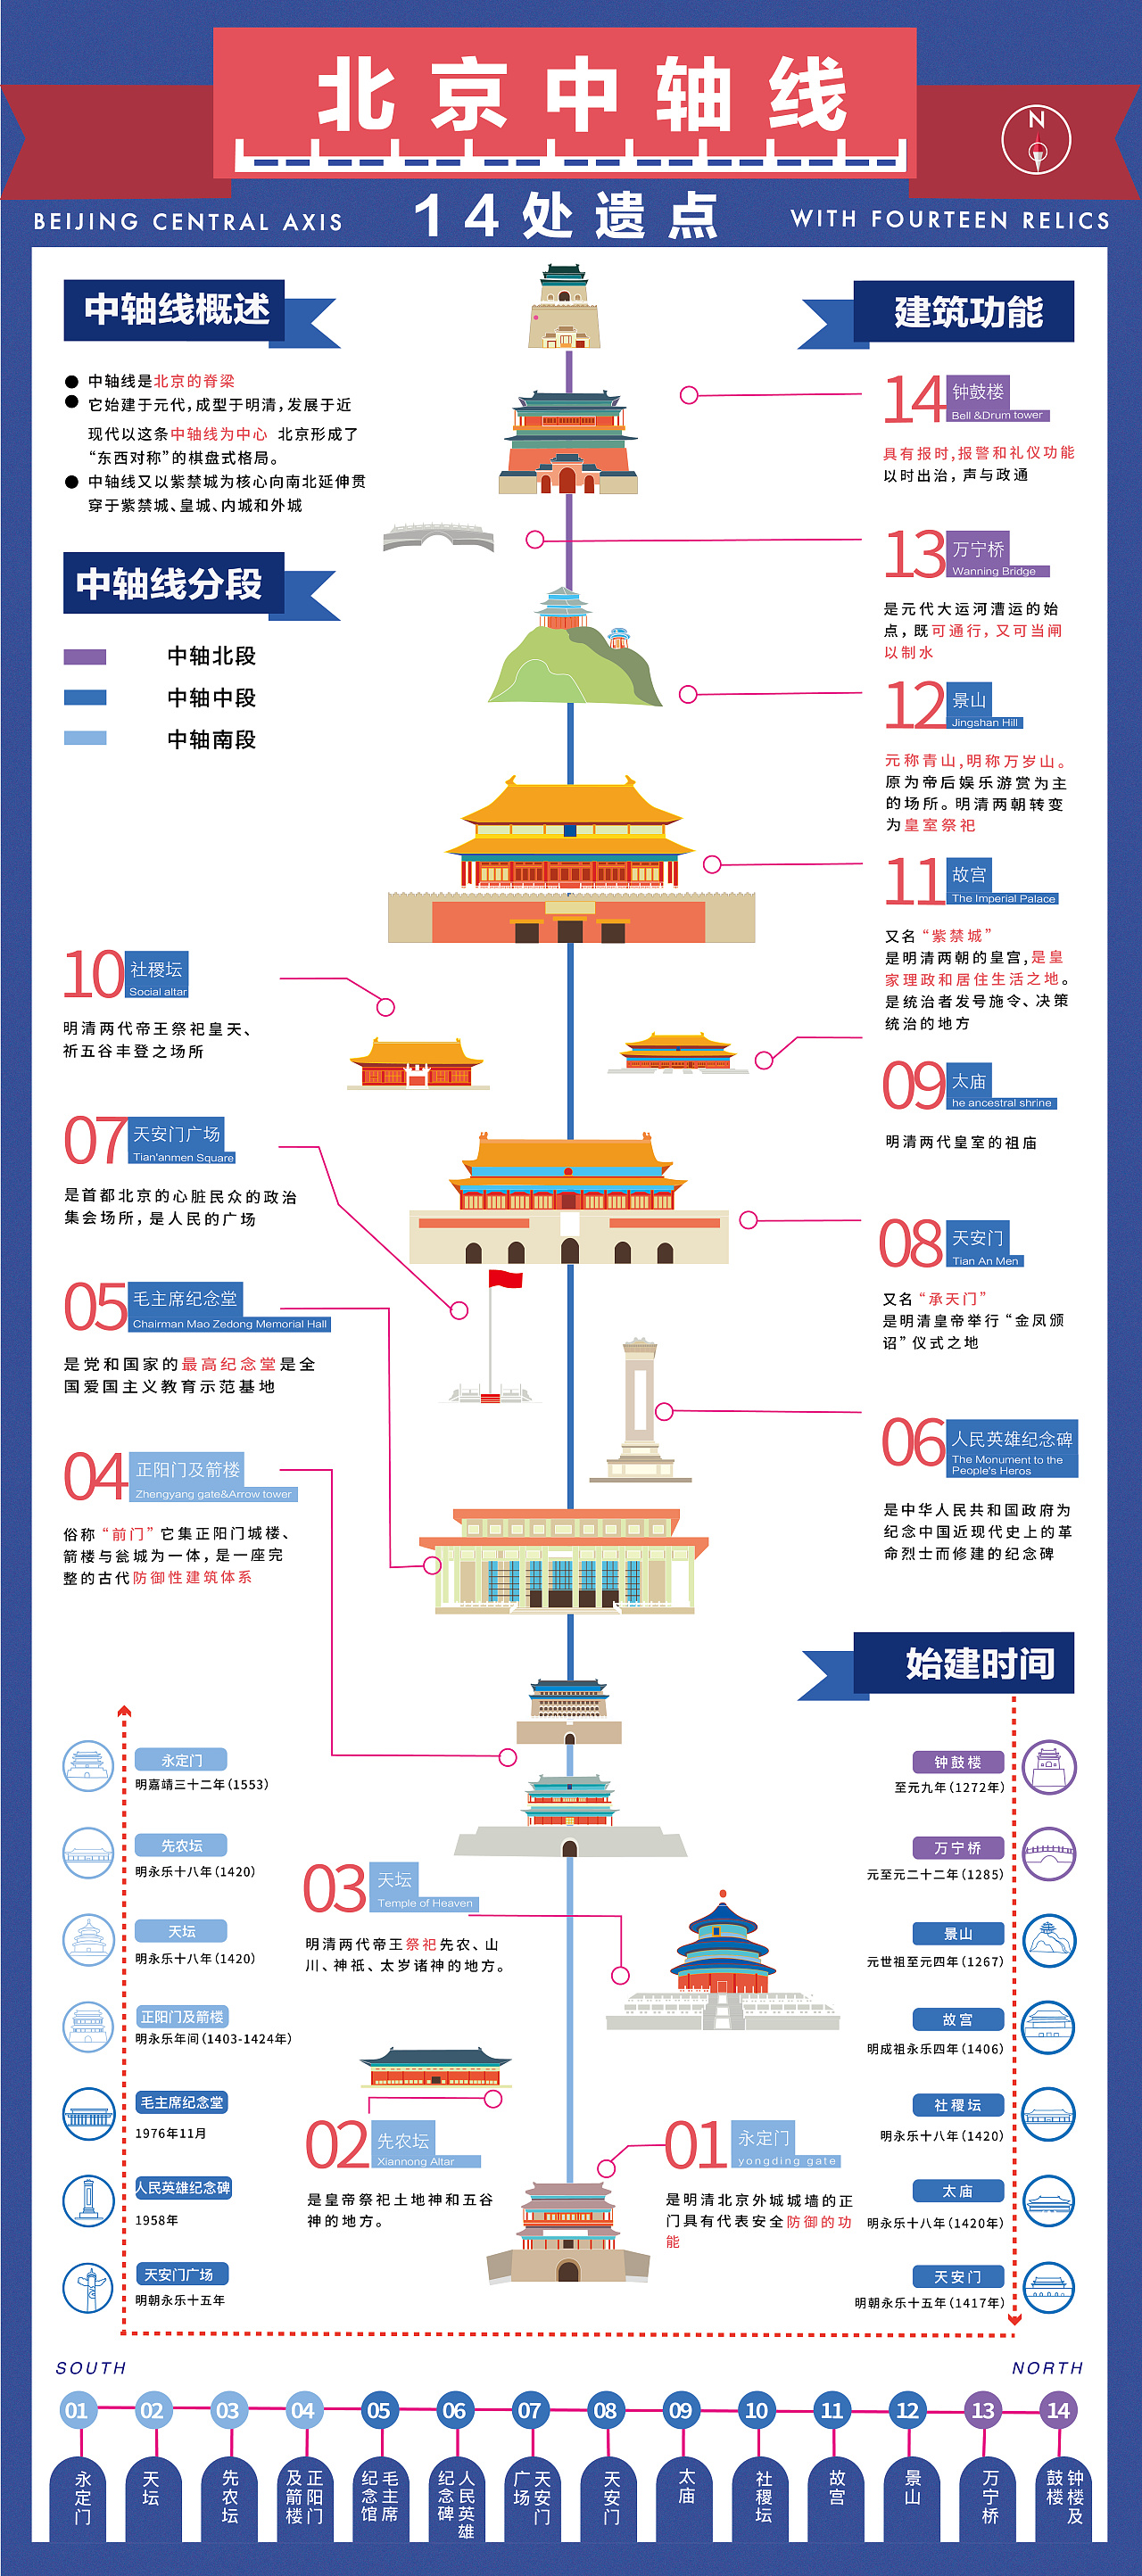 信息图形设计-北京中轴线